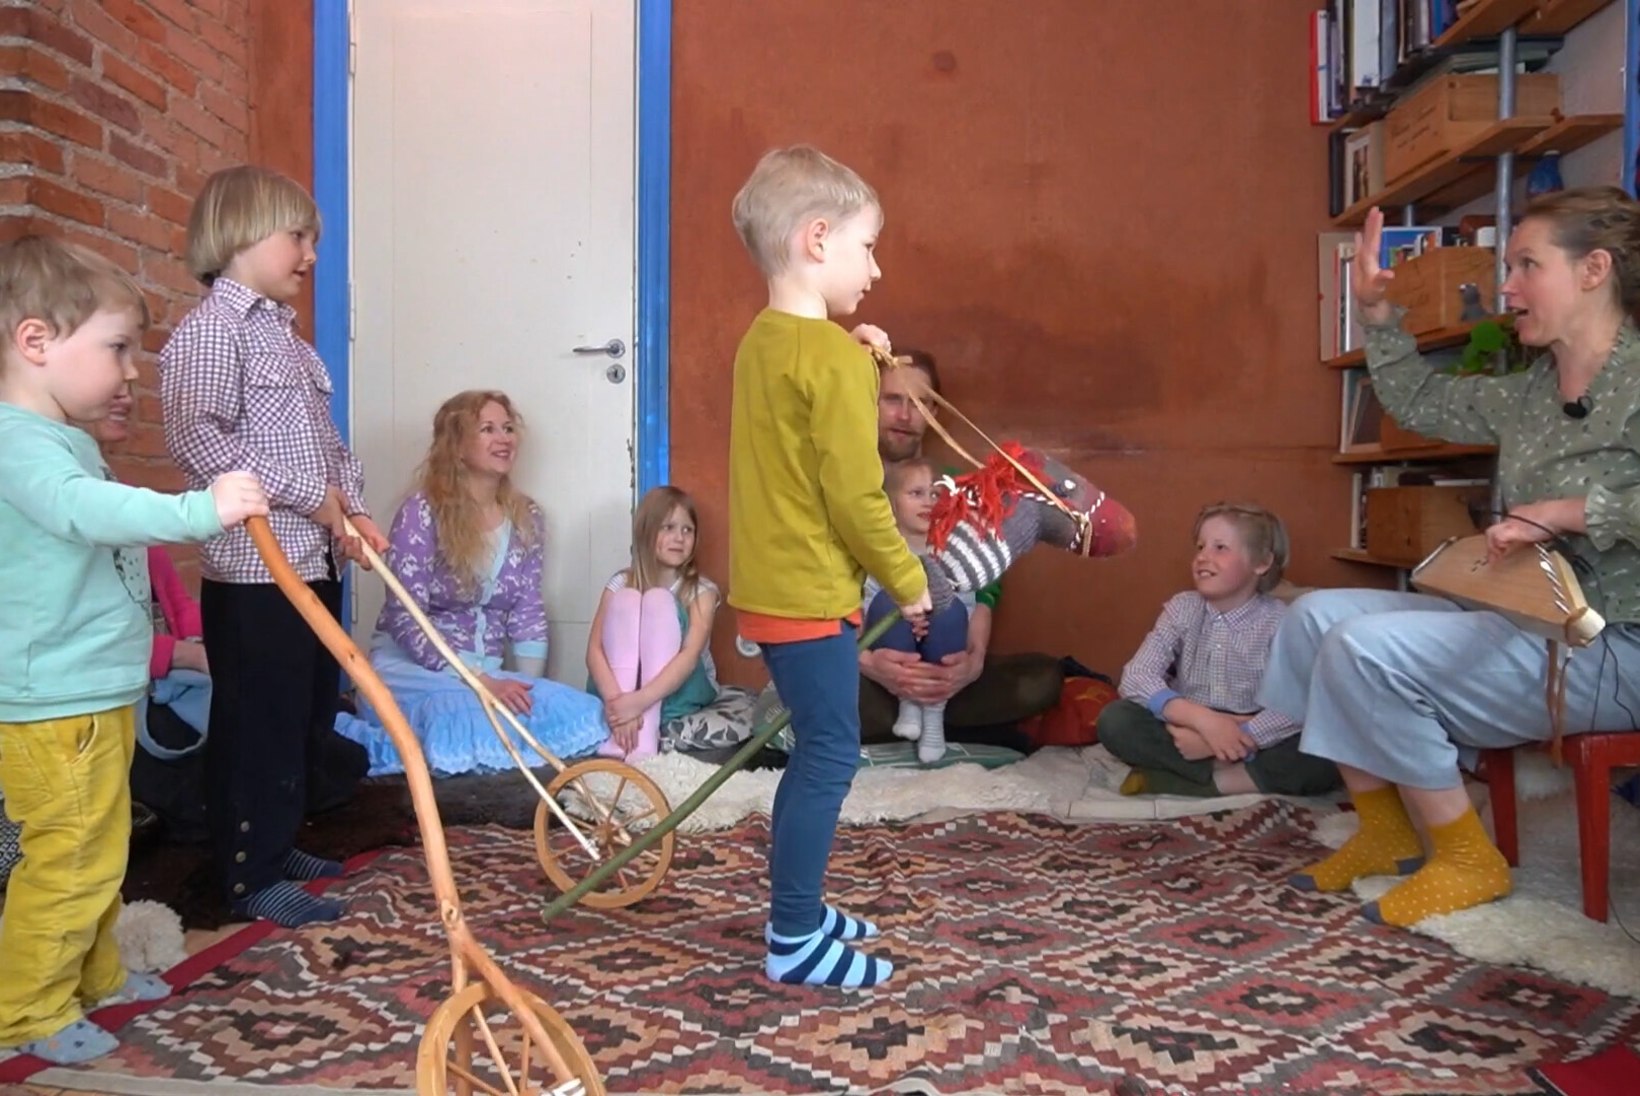 VAHVAD VIDEOD | Õpi Eesti pärimuslikke lastelaule koos lapse ja lõbusa videoga